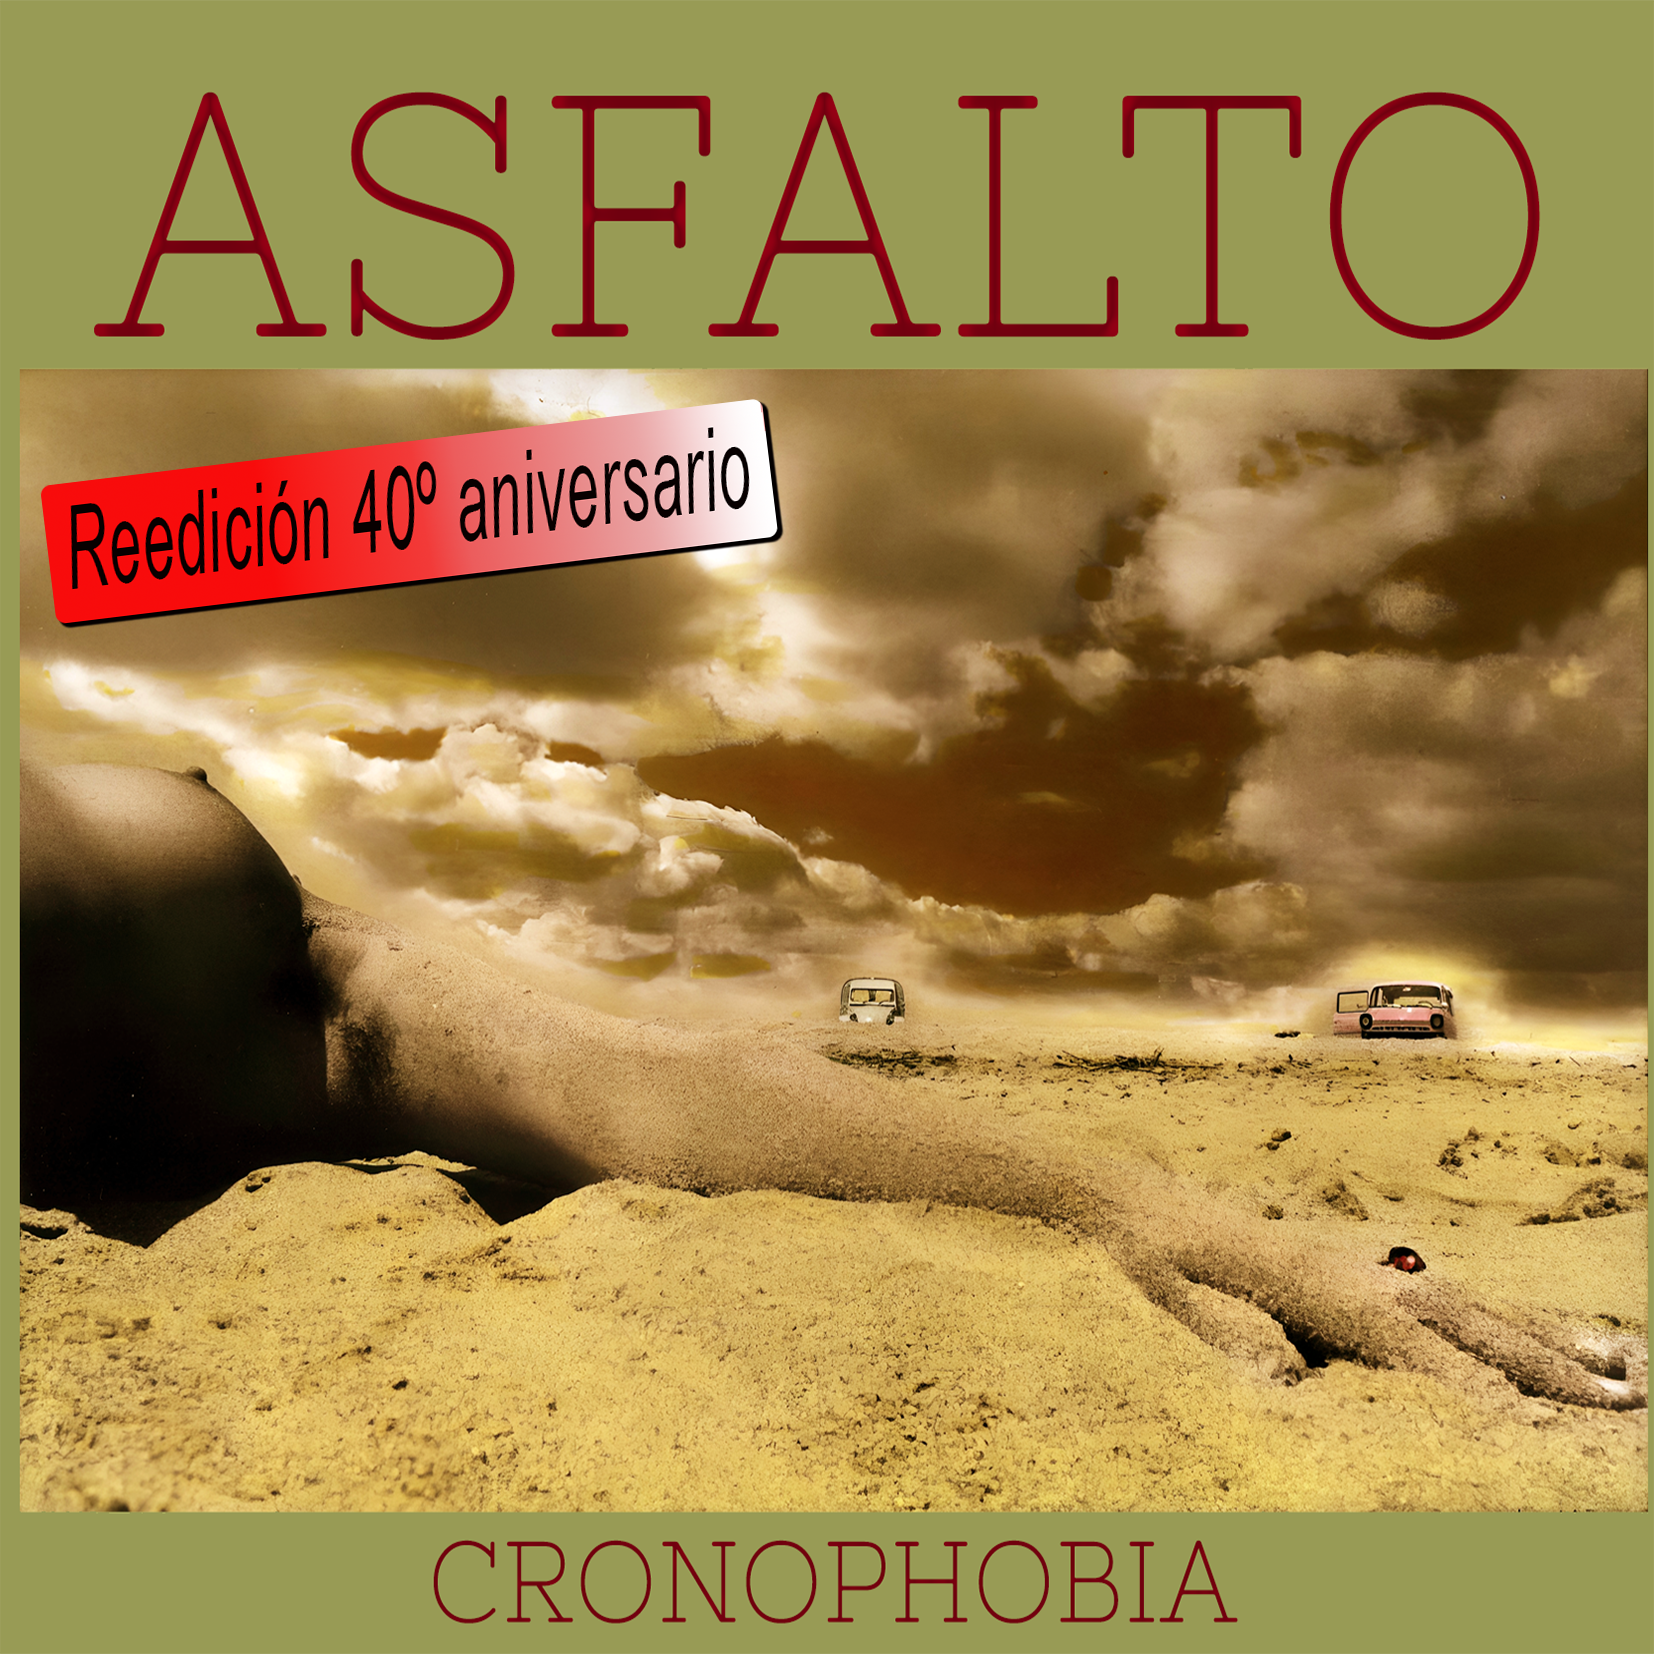 Asfalto – “Cronophobia” Reedicion 40º aniversario (descarga digital)